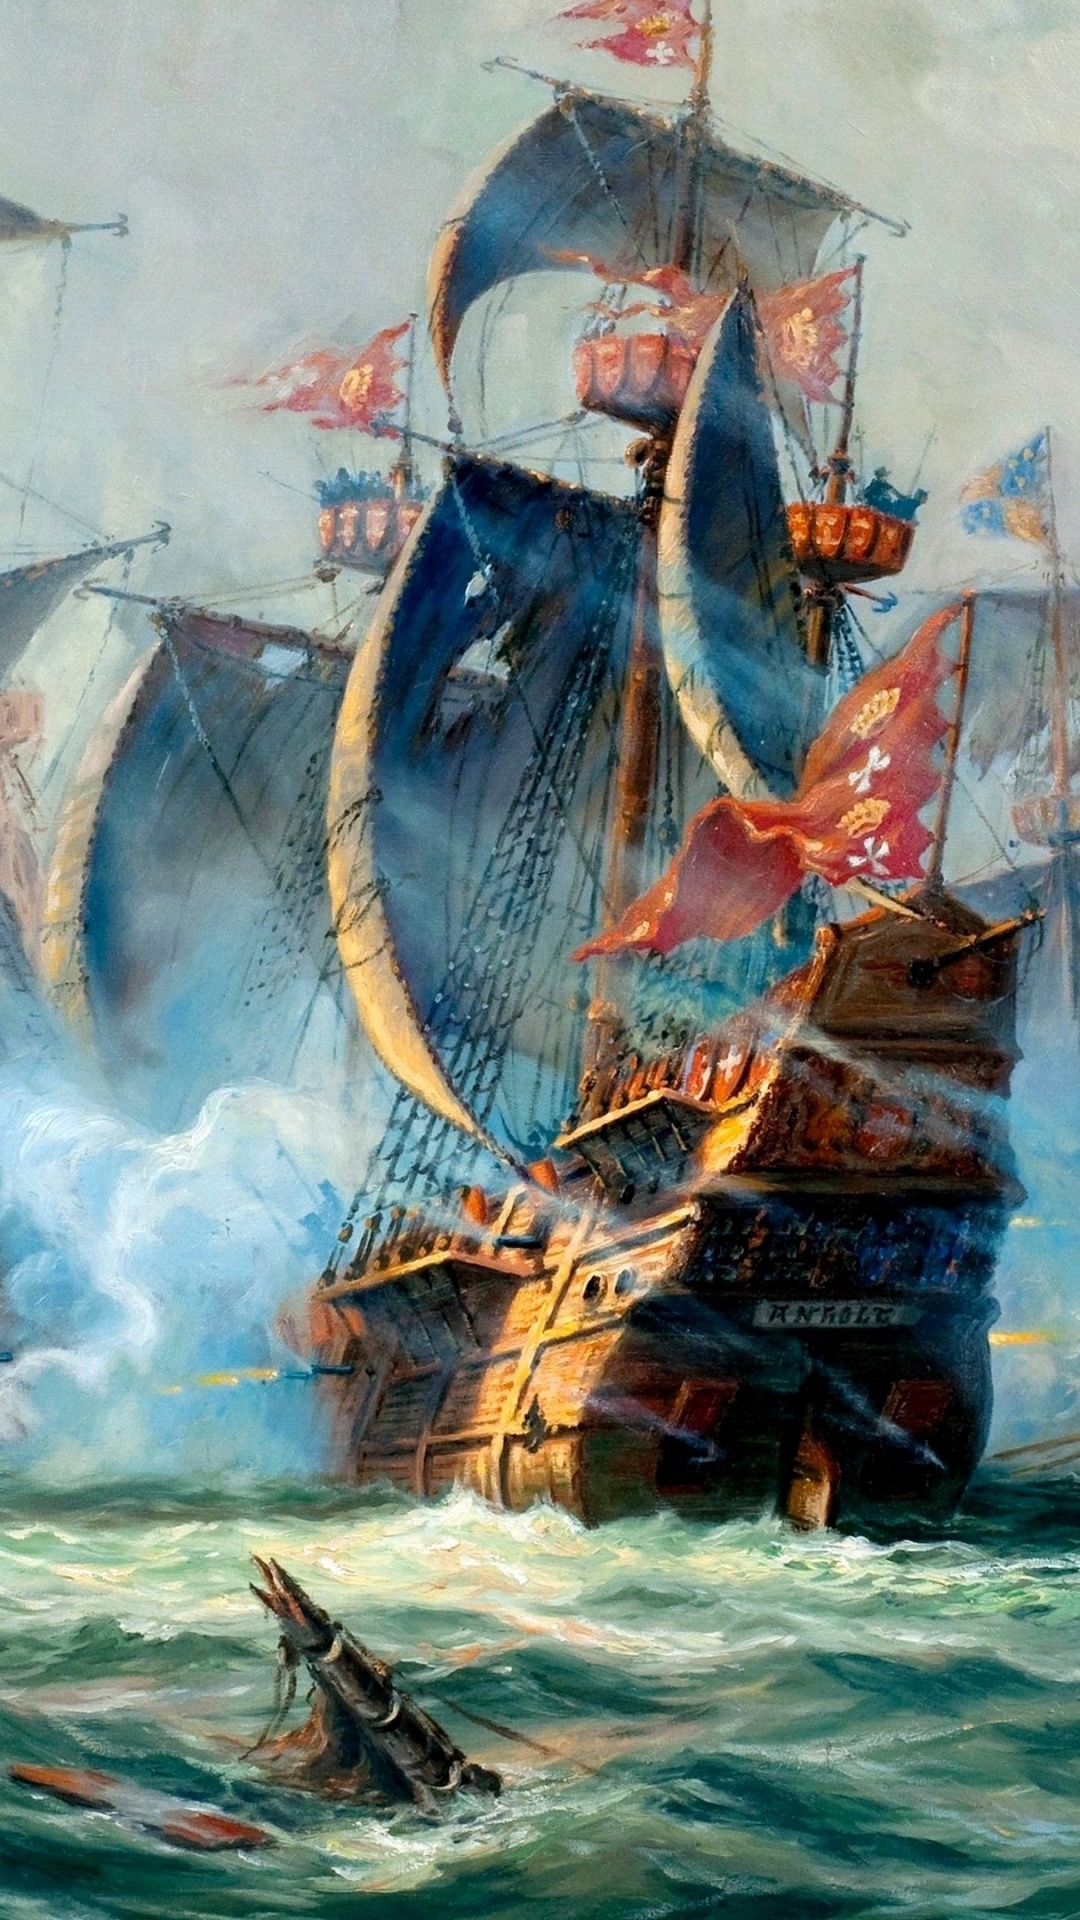 Barco Marrón en la Pintura Del Mar. Wallpaper in 1080x1920 Resolution